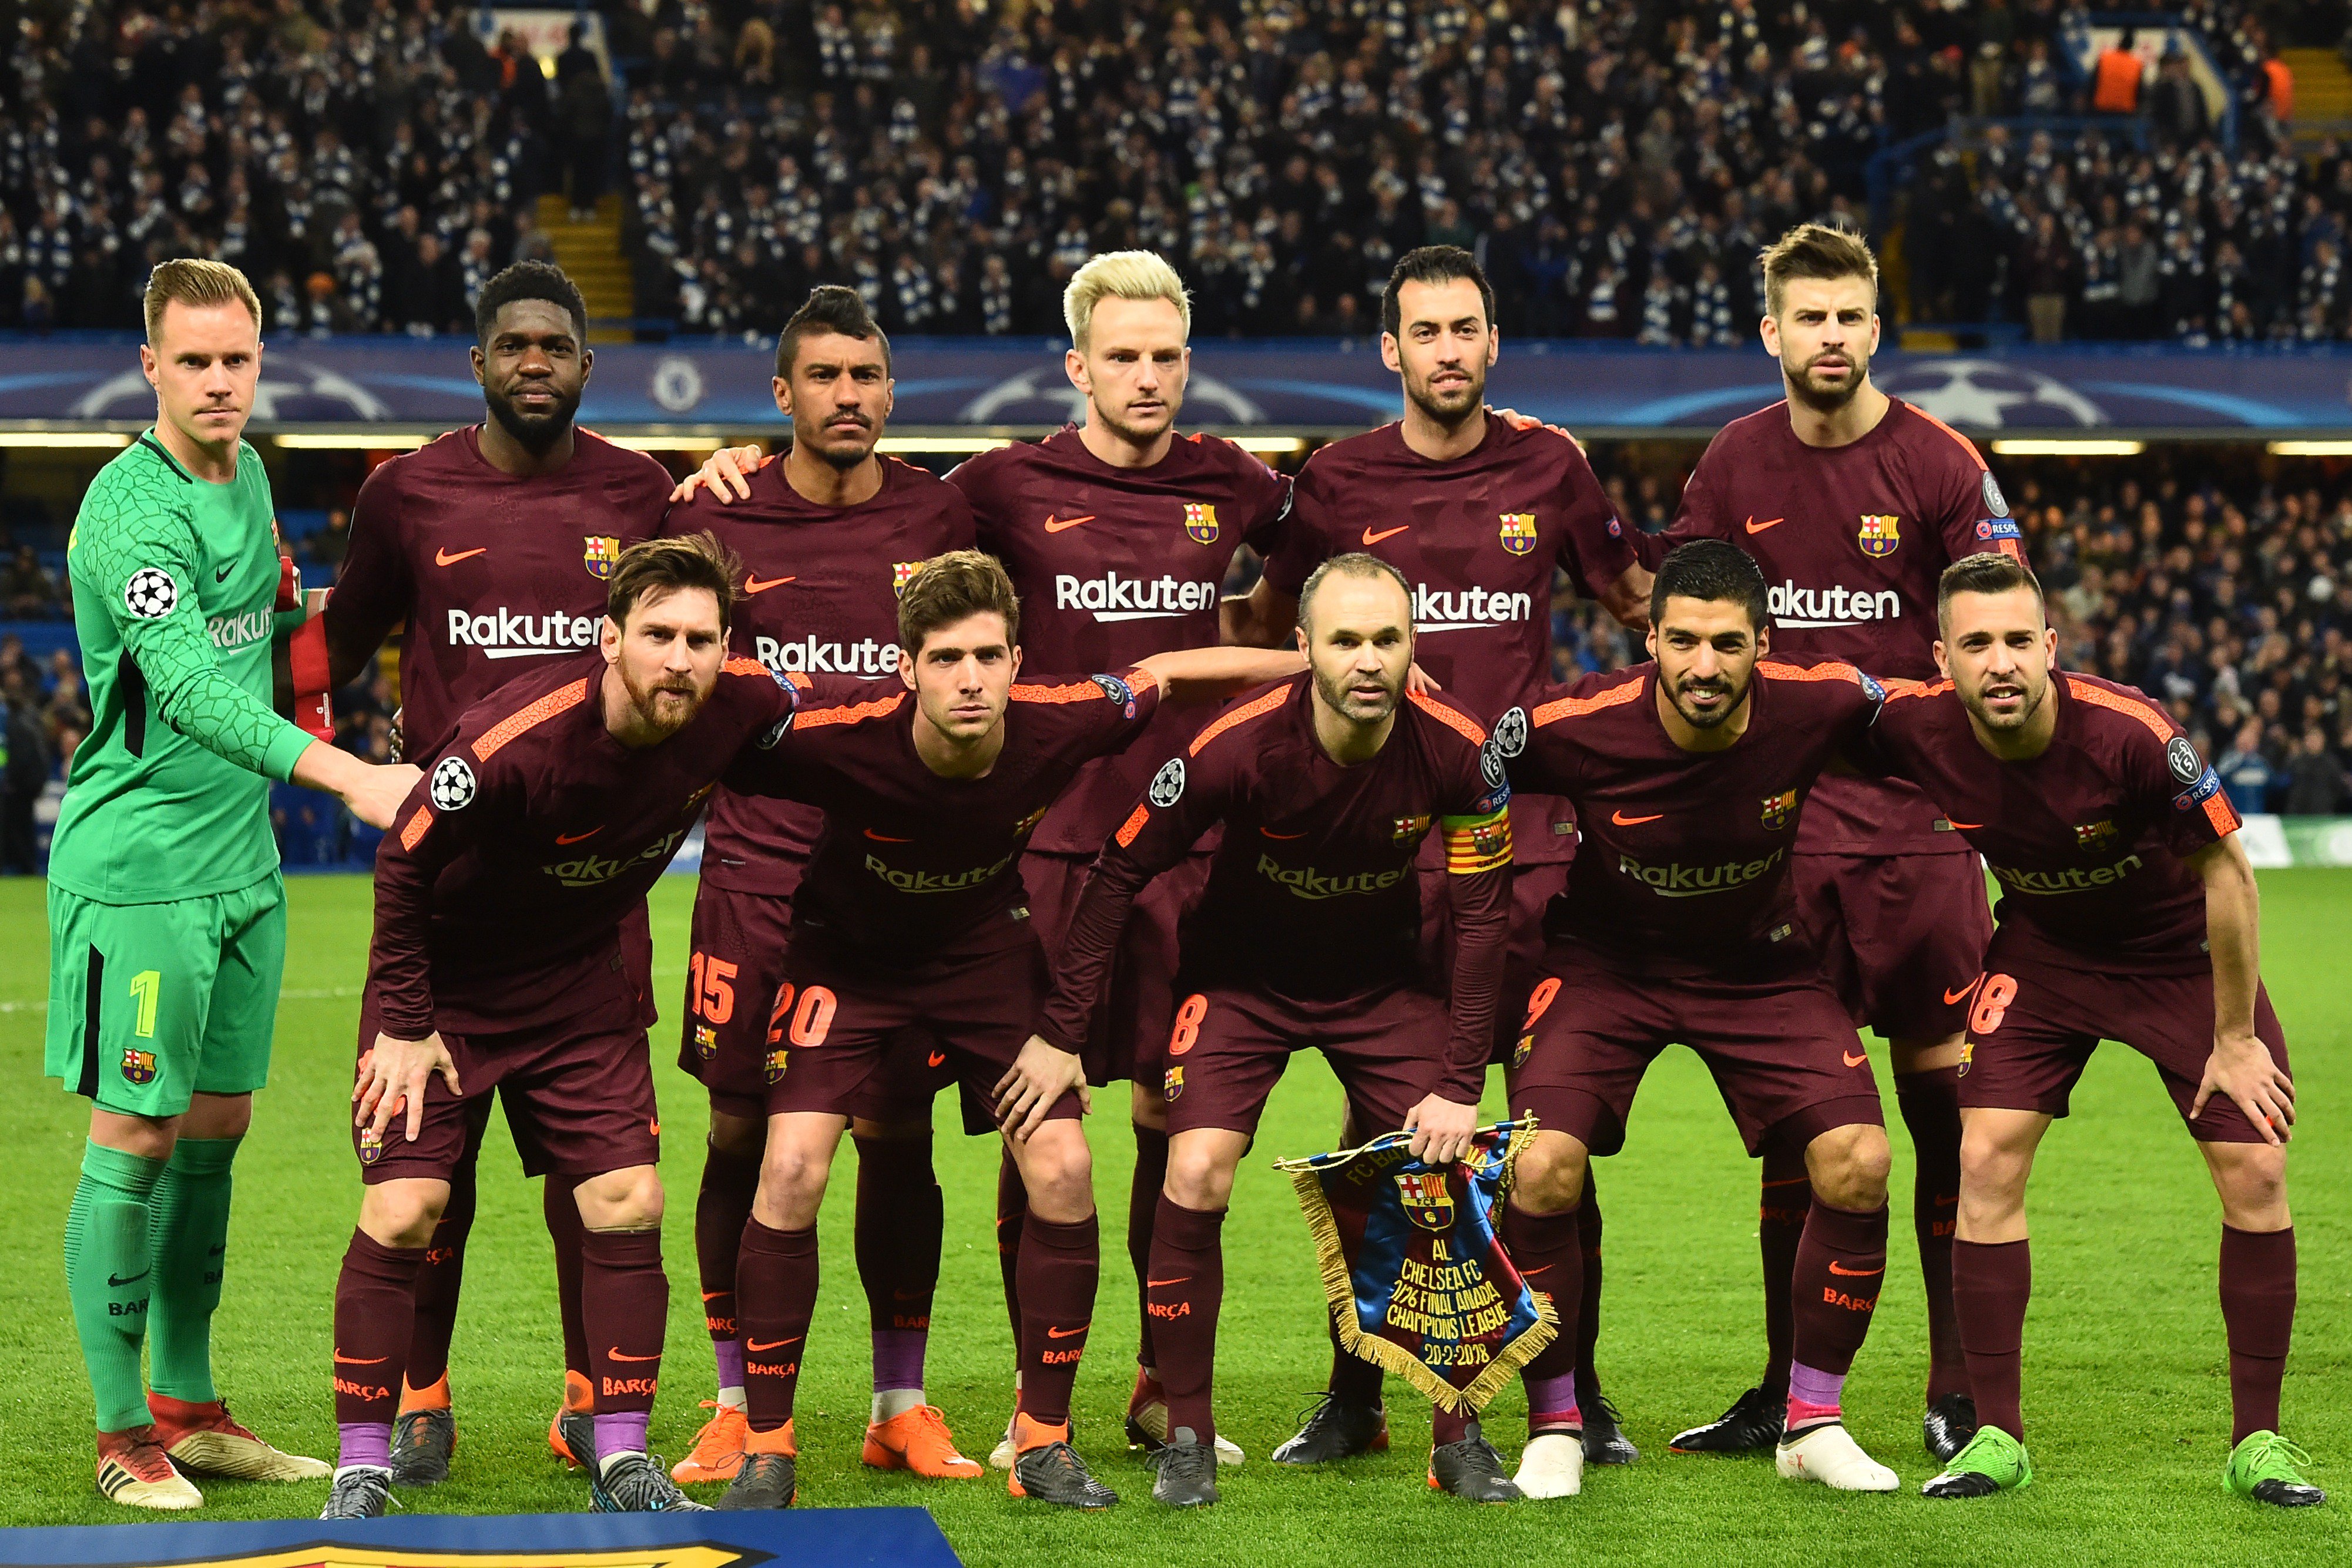 UEFA Champions League on Twitter: "The Barcelona team in winners in 2018? 🏆 https://t.co/Zqbta7es2M" / Twitter